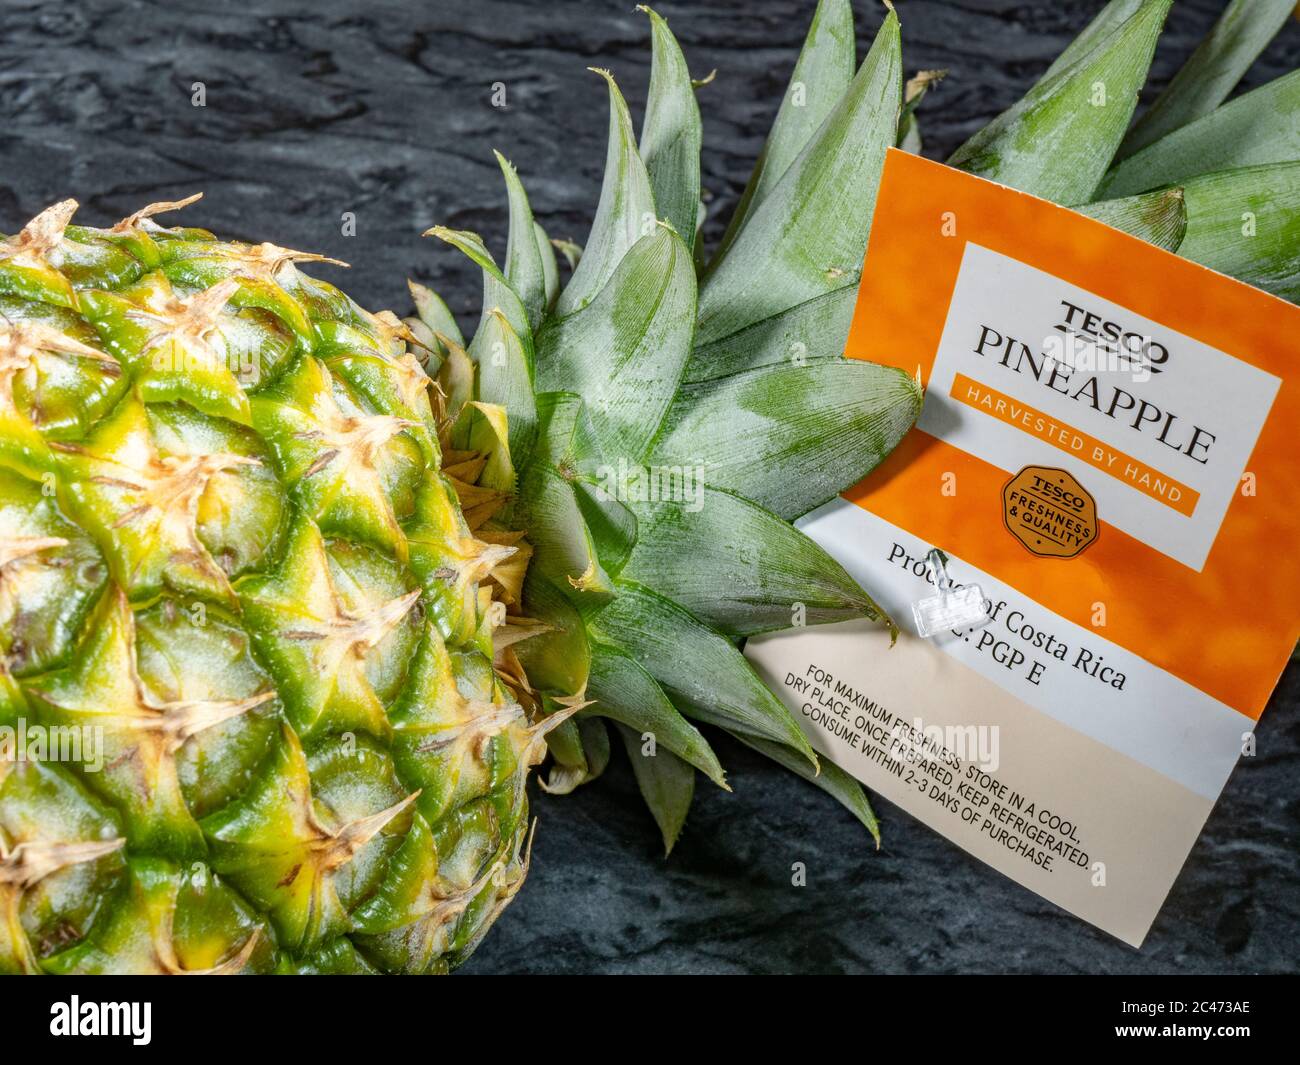 Primo piano di un ananas fresco proveniente dal supermercato Tesco, recante l’etichetta del marchio e le informazioni ‘raccolte a mano’ e ‘prodotto della Costa Rica’. Foto Stock